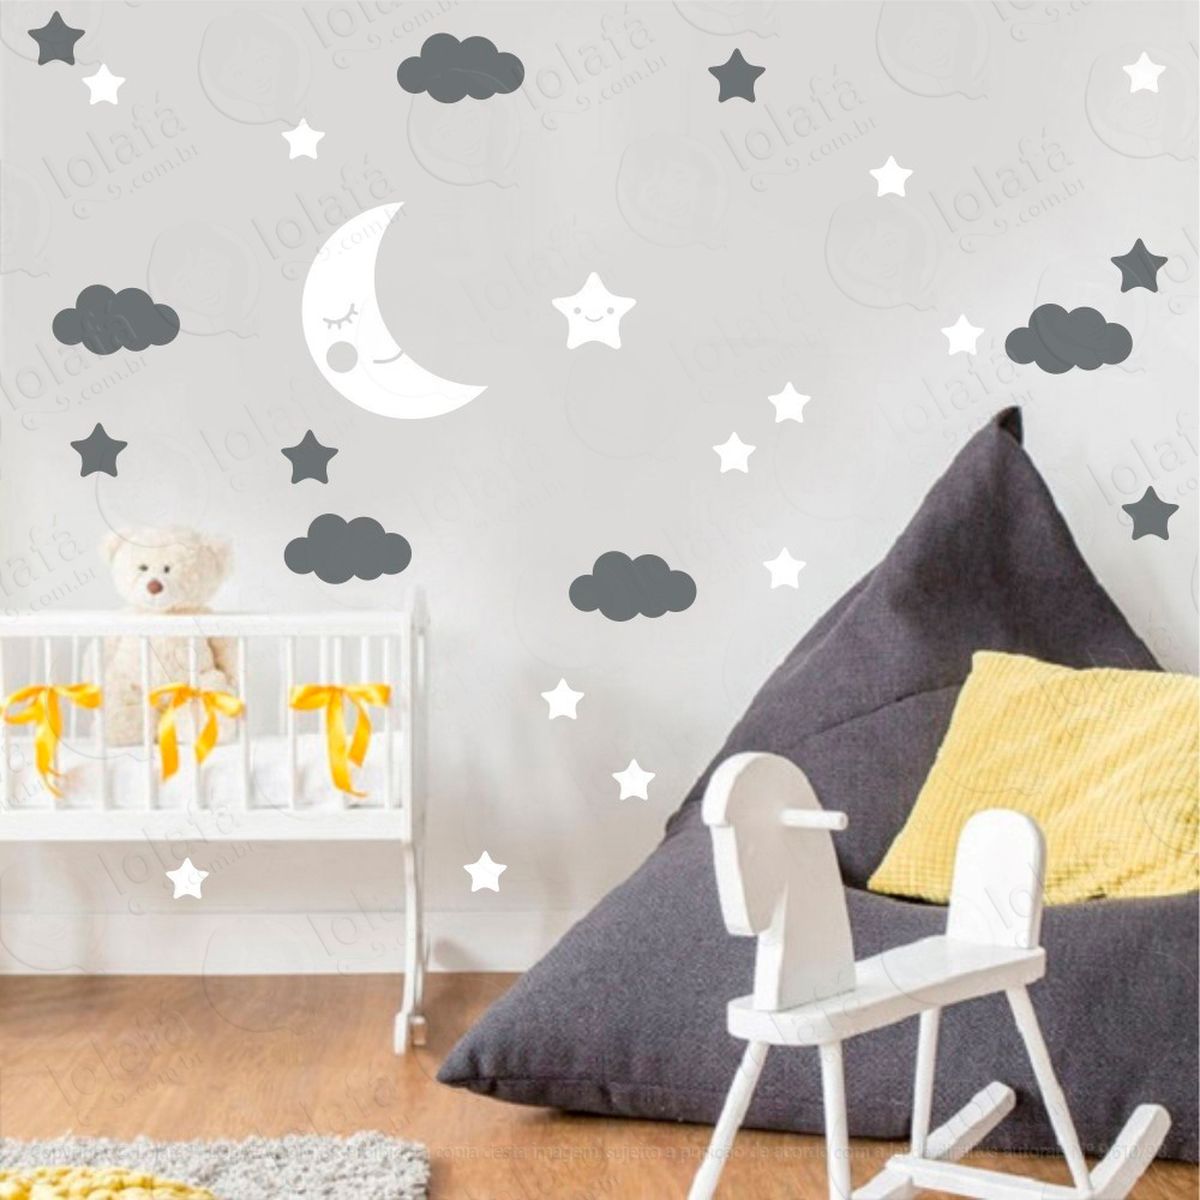 adesivos lua nuvens e estrelas 38 peças adesivos para quarto de bebê infantil - mod:655